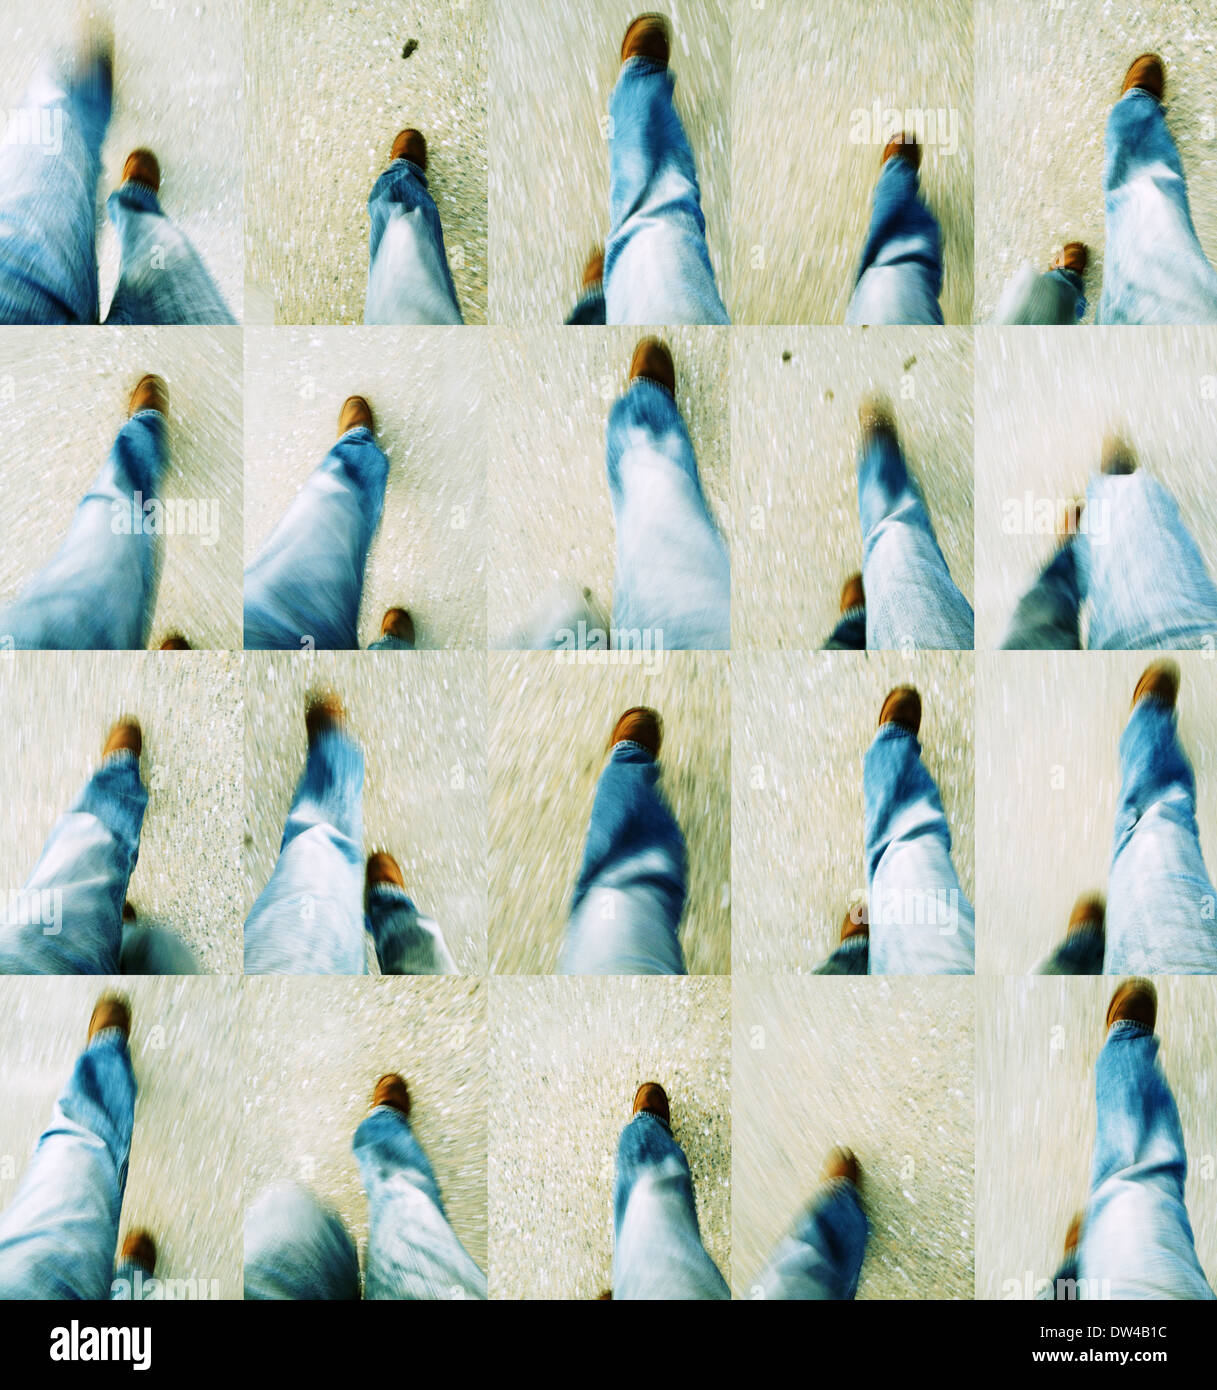 View of feet walking taken from waist level. Feet, foot, shoe, boot, walk, walking, strut, Stock Photo